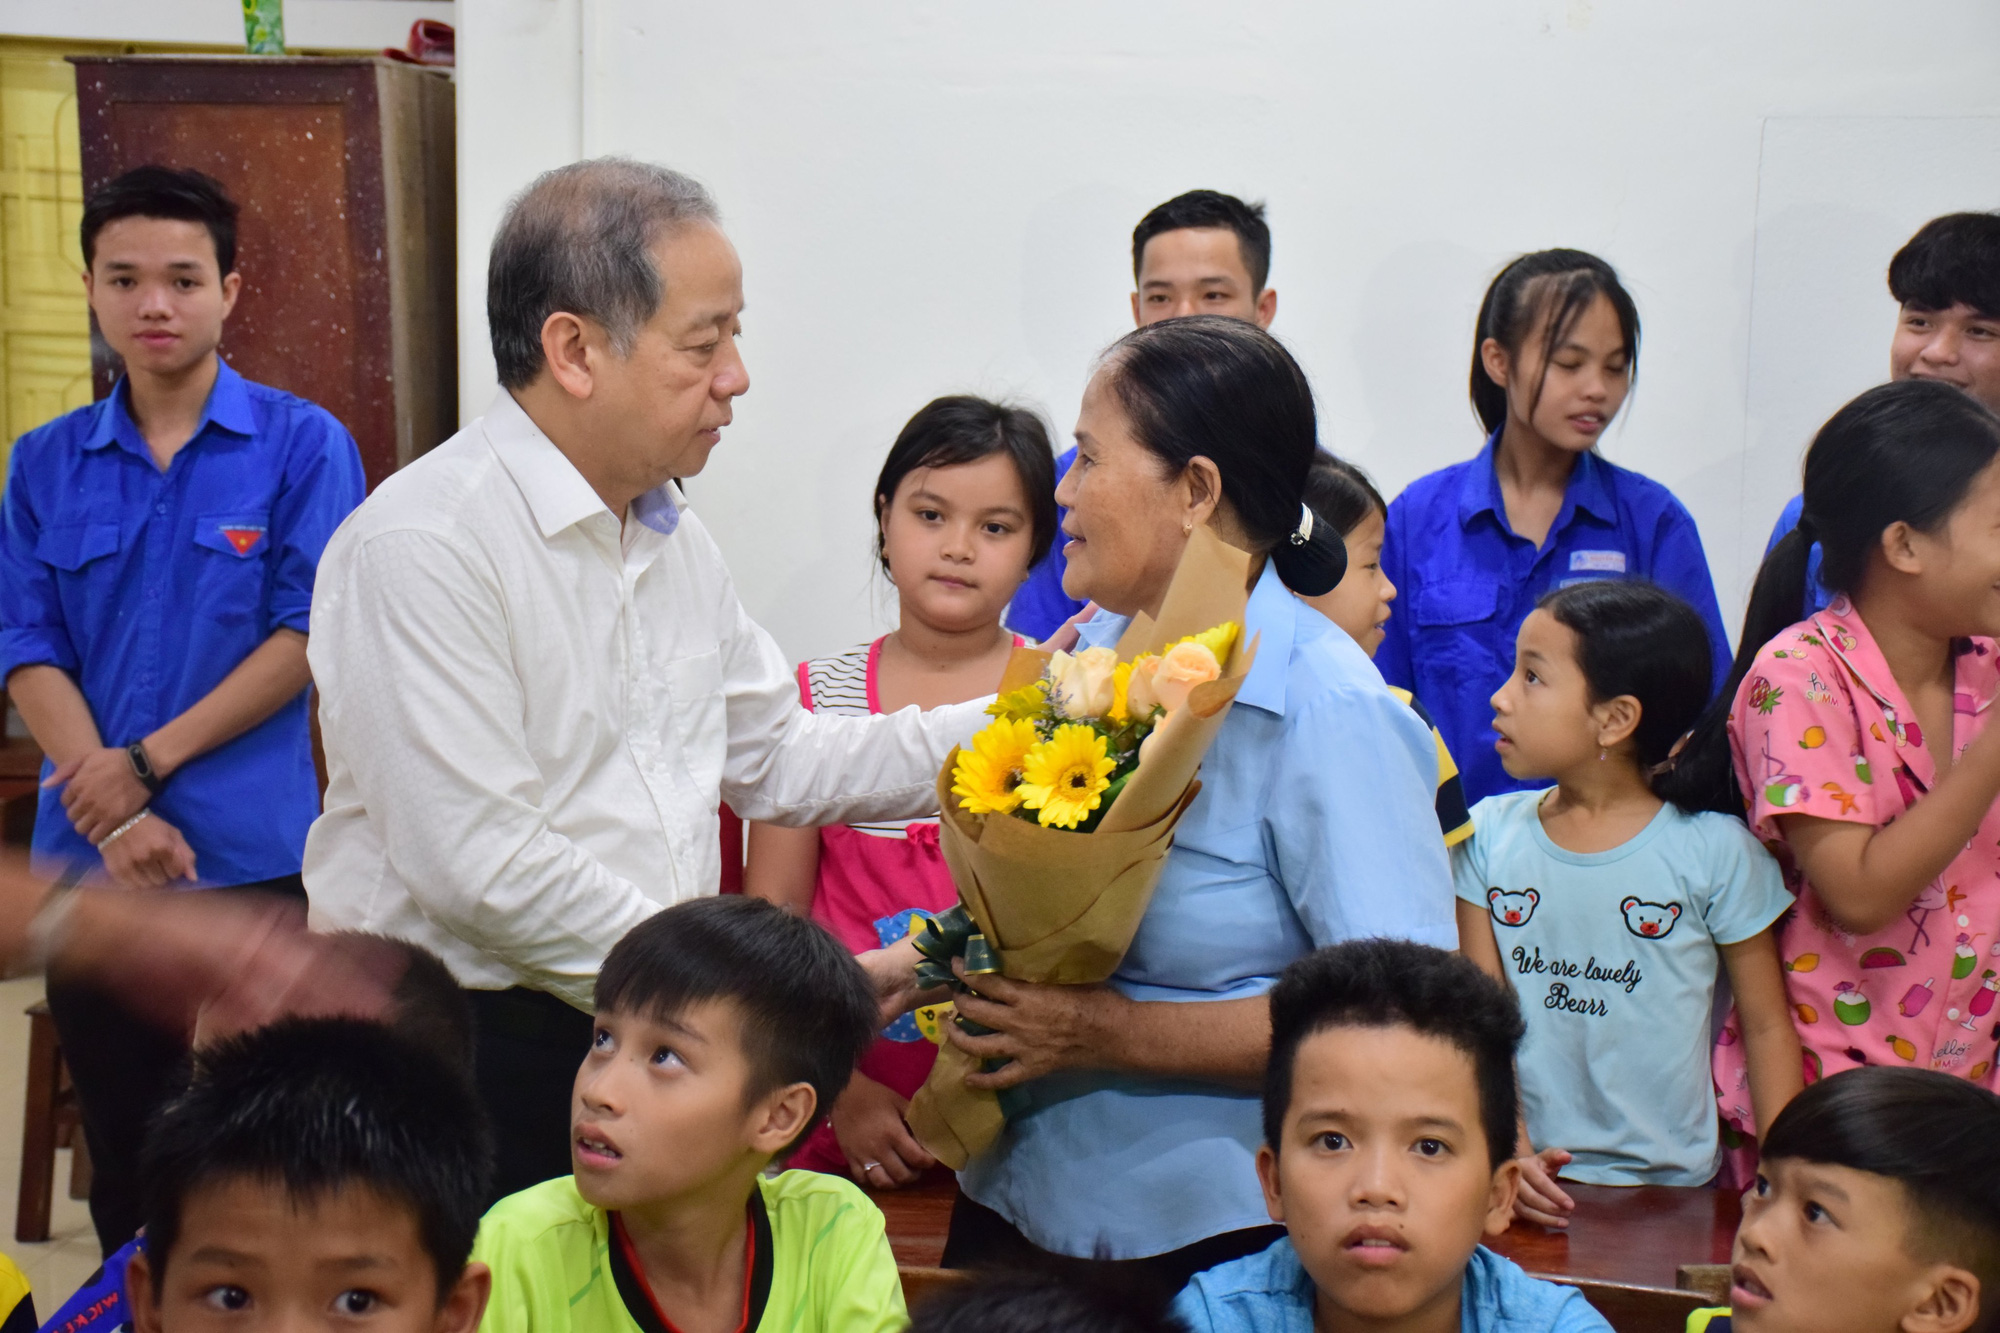 Thăm các lớp học tình thương, Chủ tịch tỉnh Thừa Thiên Huế nói điều này khiến thầy cô xúc động - Ảnh 1.